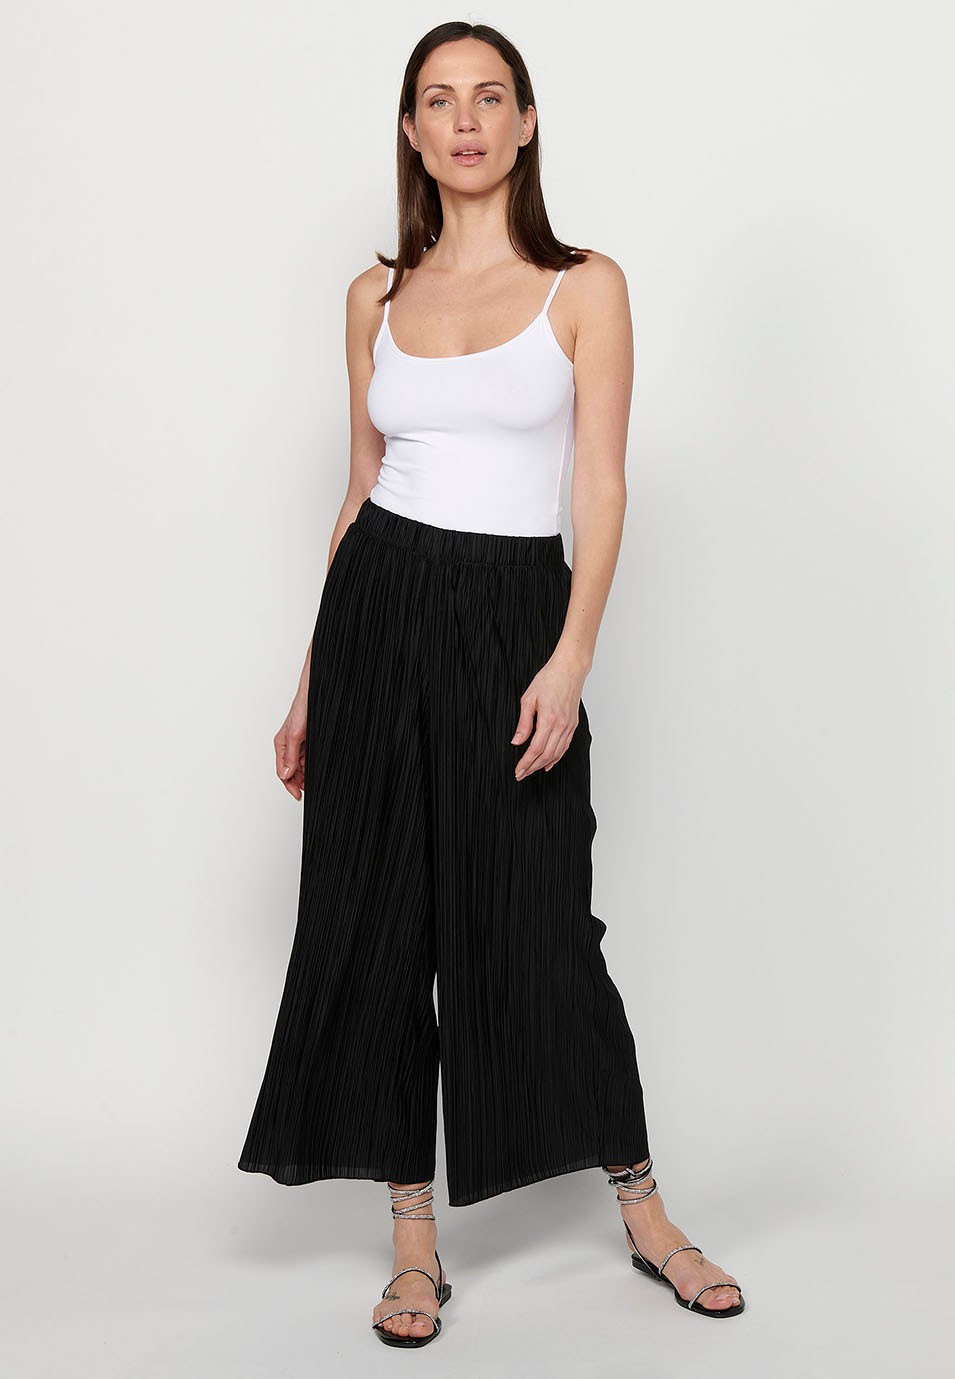 Pantalon long léger, taille caoutchoutée, tissu plissé noir pour femme